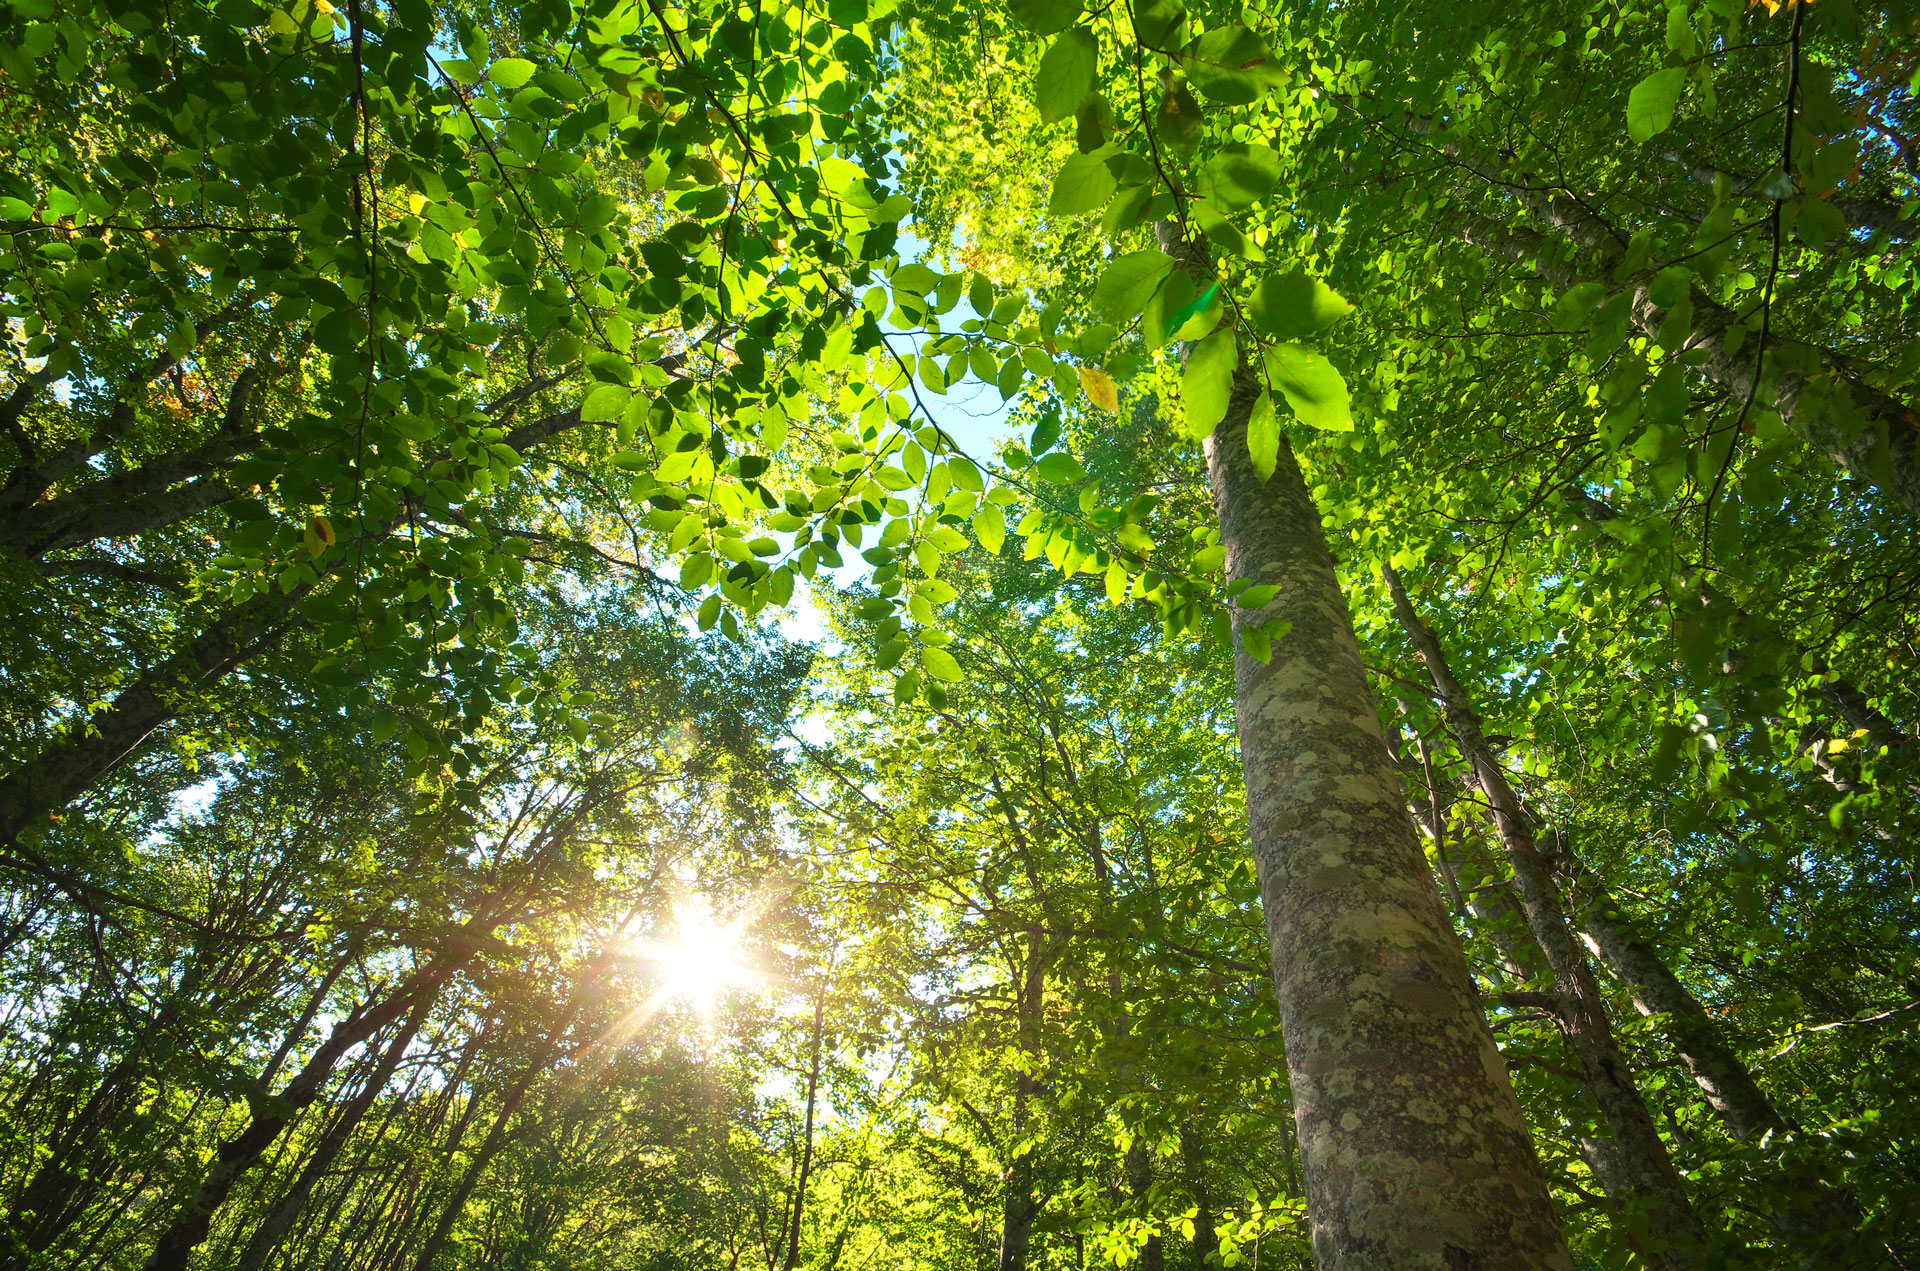 Der Blick geht an Bäumen nach oben durch grünes Blätterdach und die Sonne strahlt hindurch.